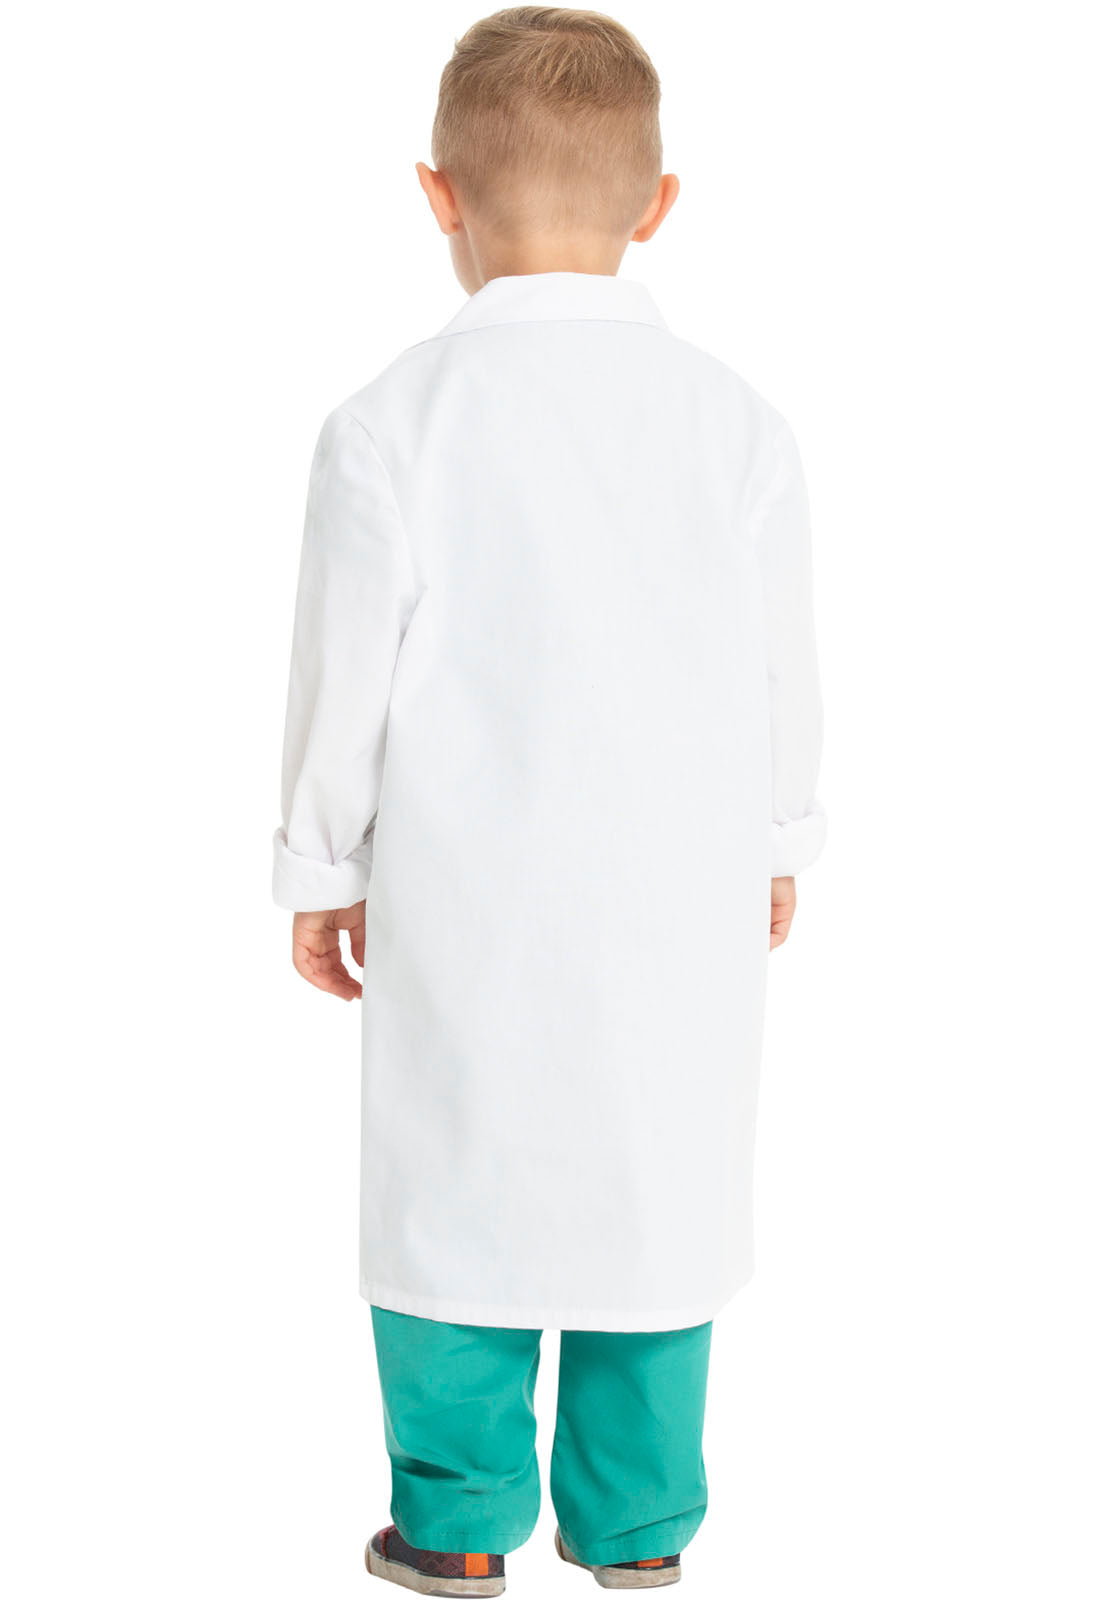 Kids' Lab Coat in White